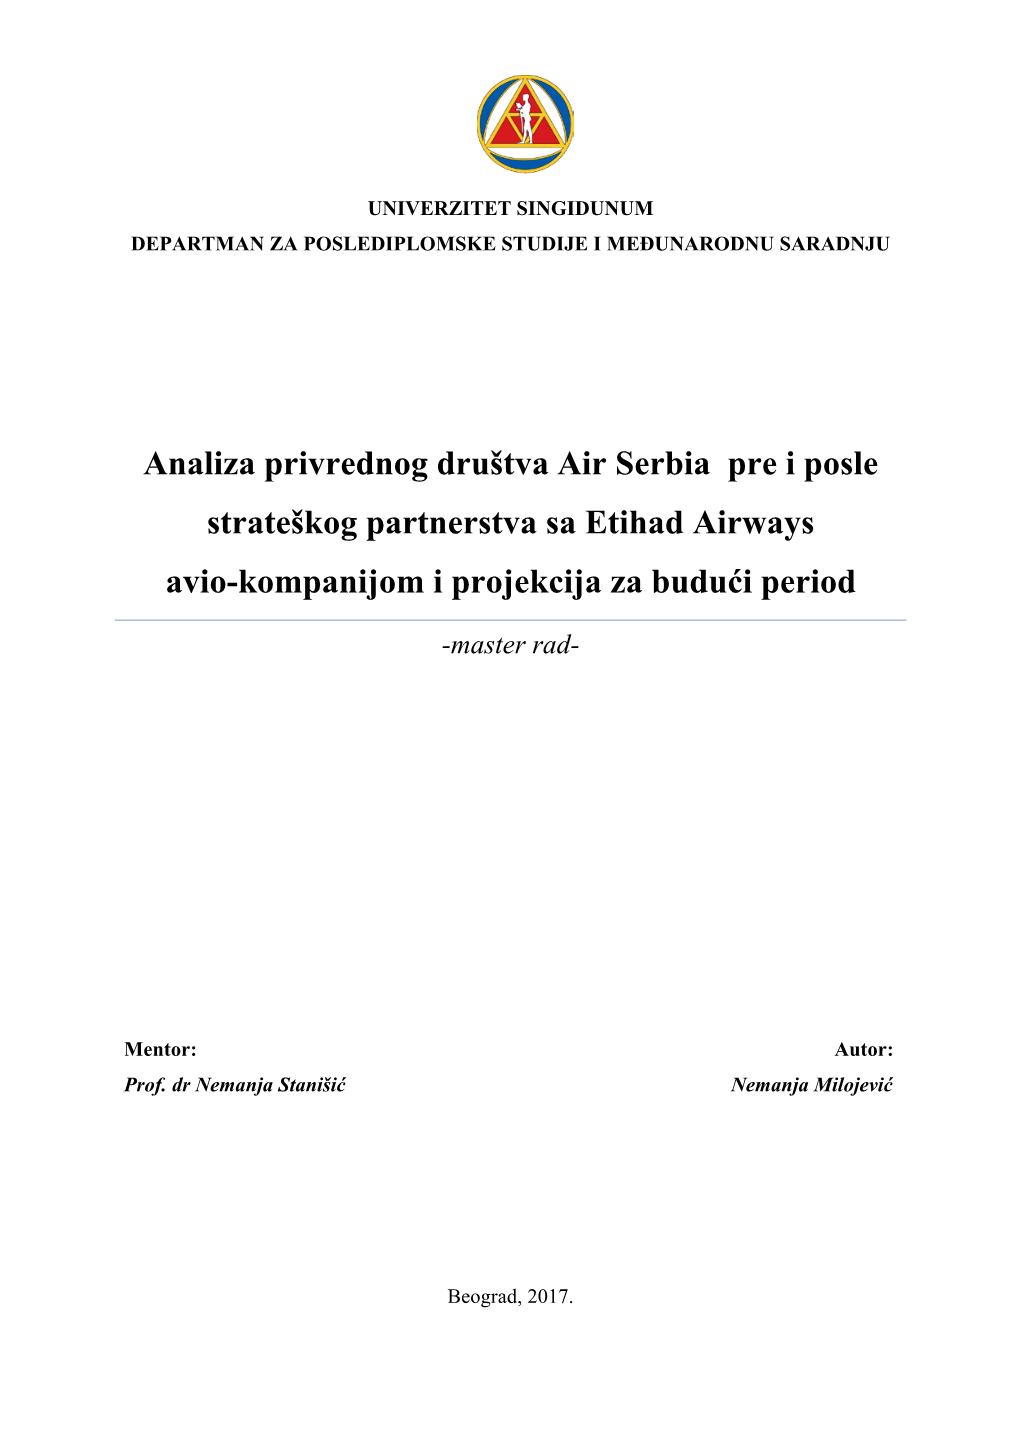 Analiza Privrednog Društva Air Serbia Pre I Posle Strateškog Partnerstva Sa Etihad Airways Avio-Kompanijom I Projekcija Za Budući Period -Master Rad